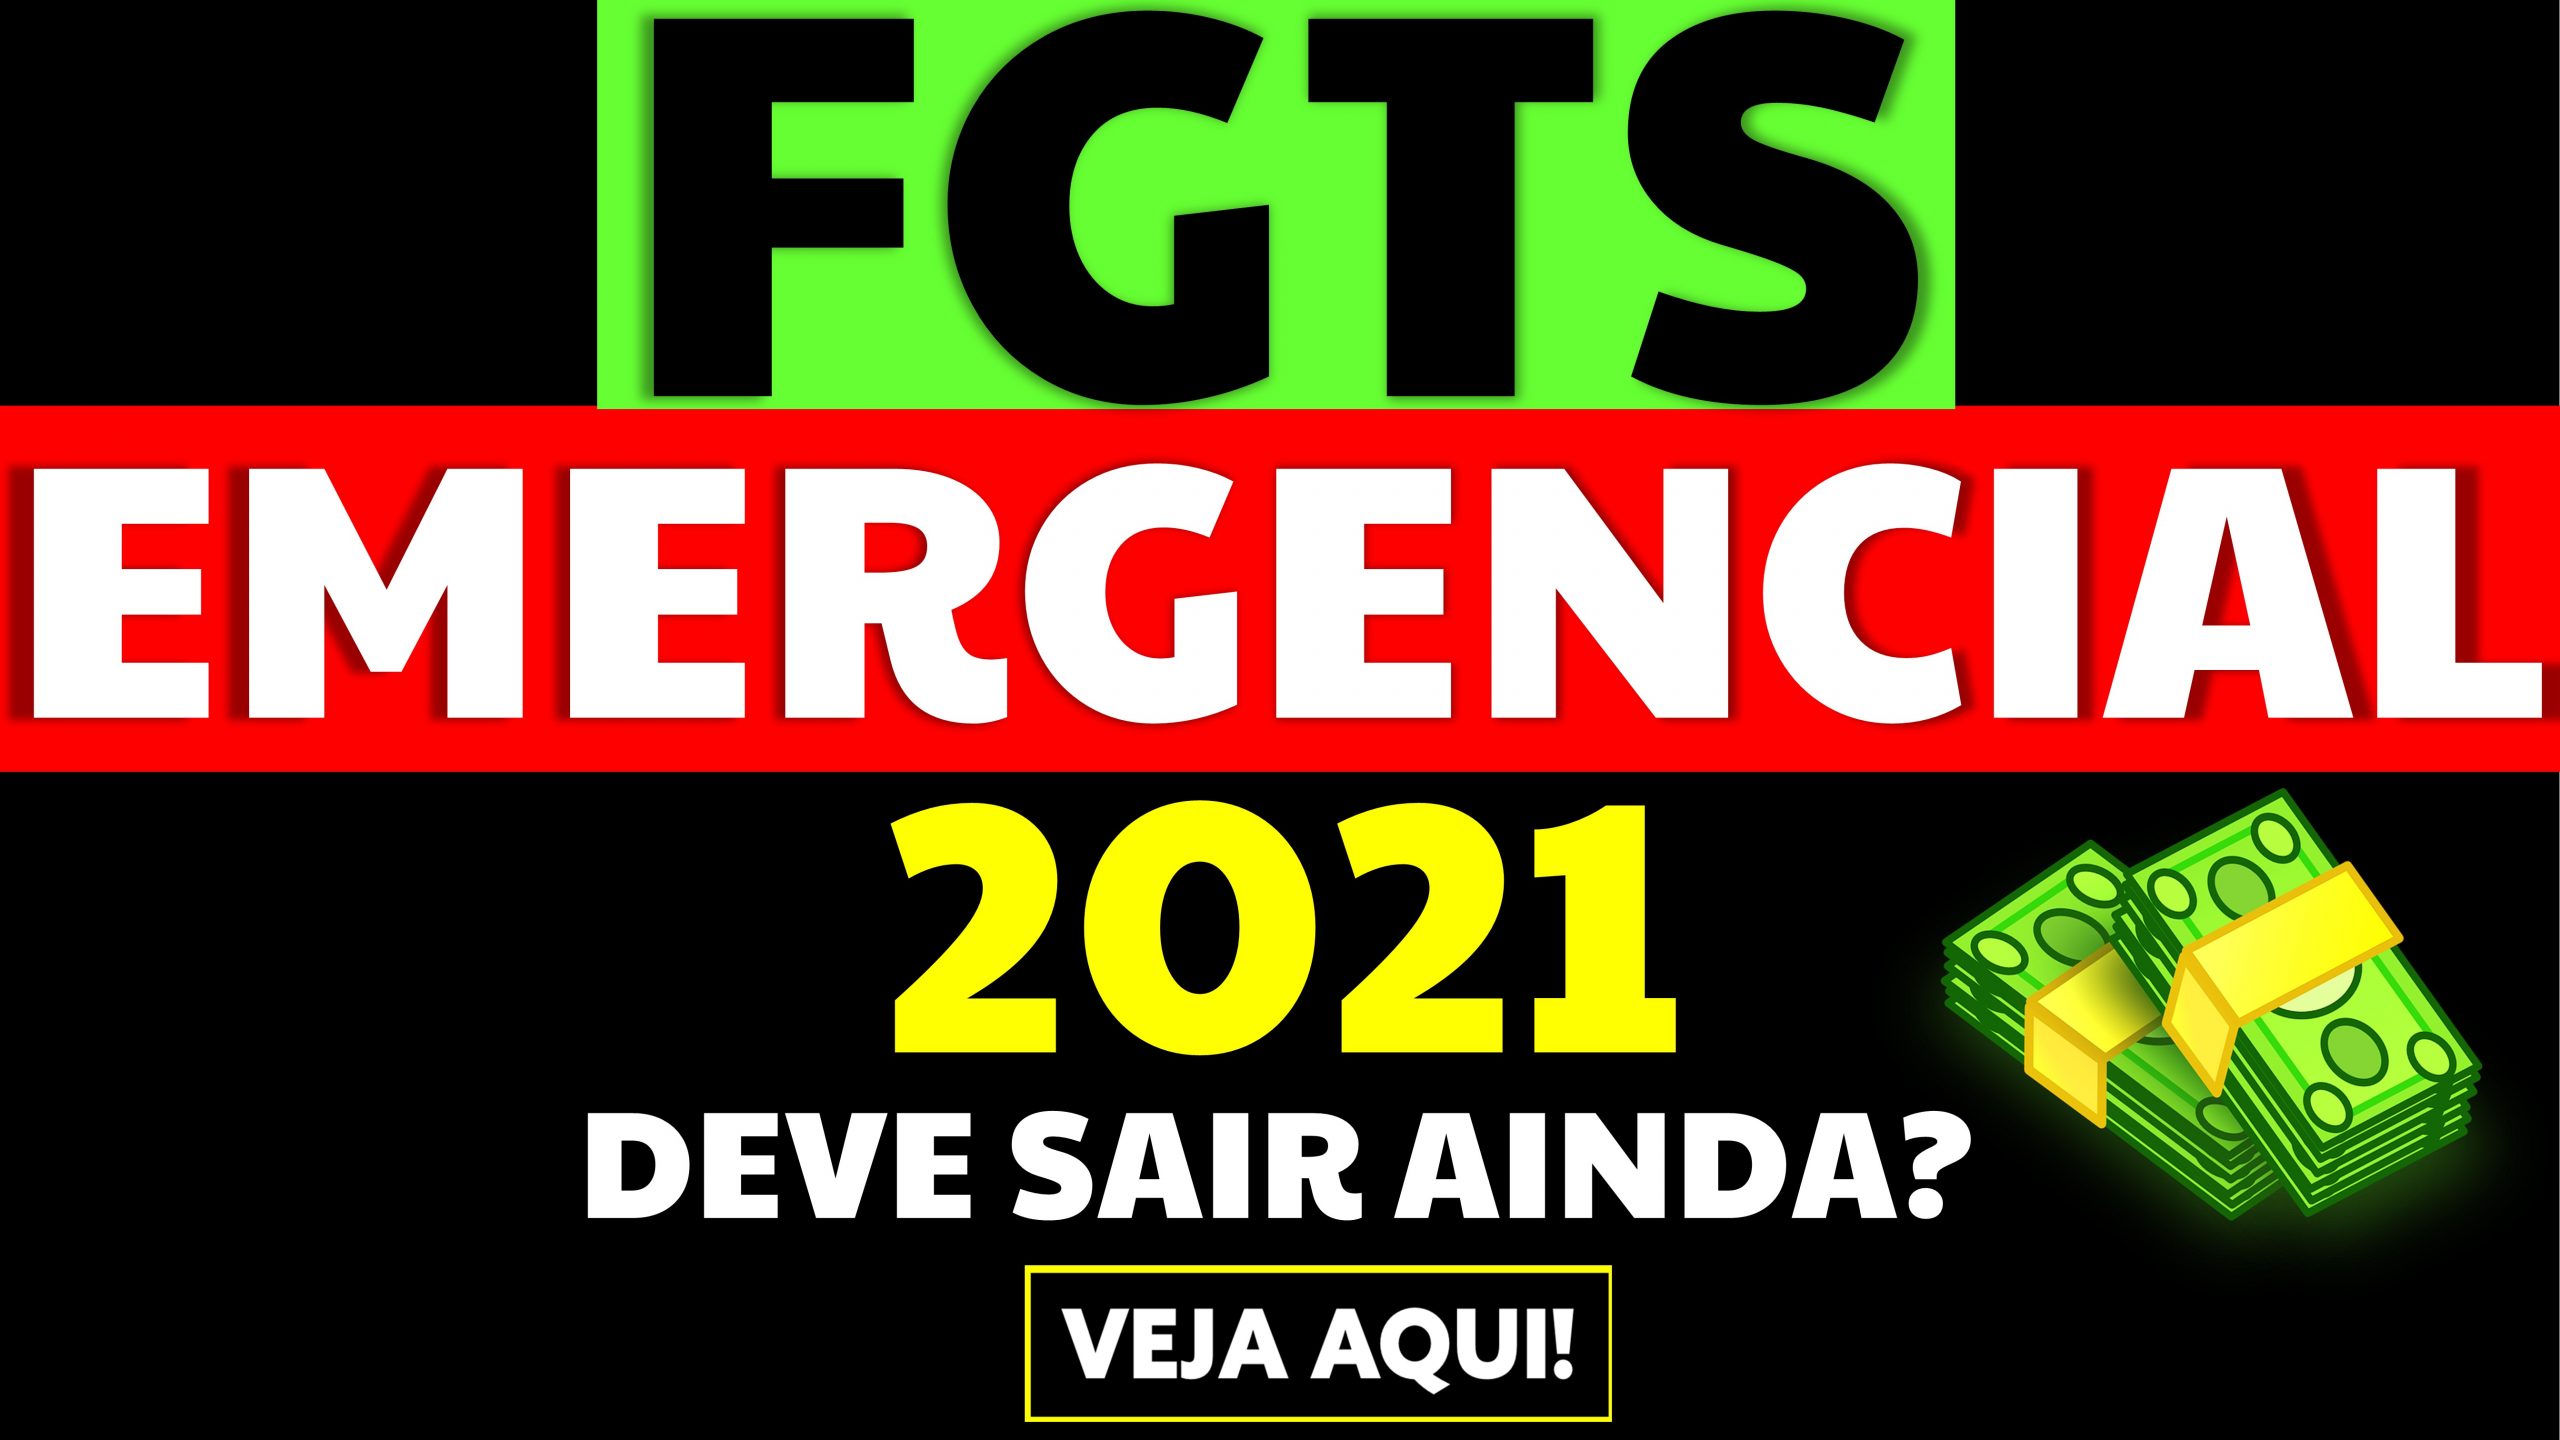 FGTS emergencial em 2021